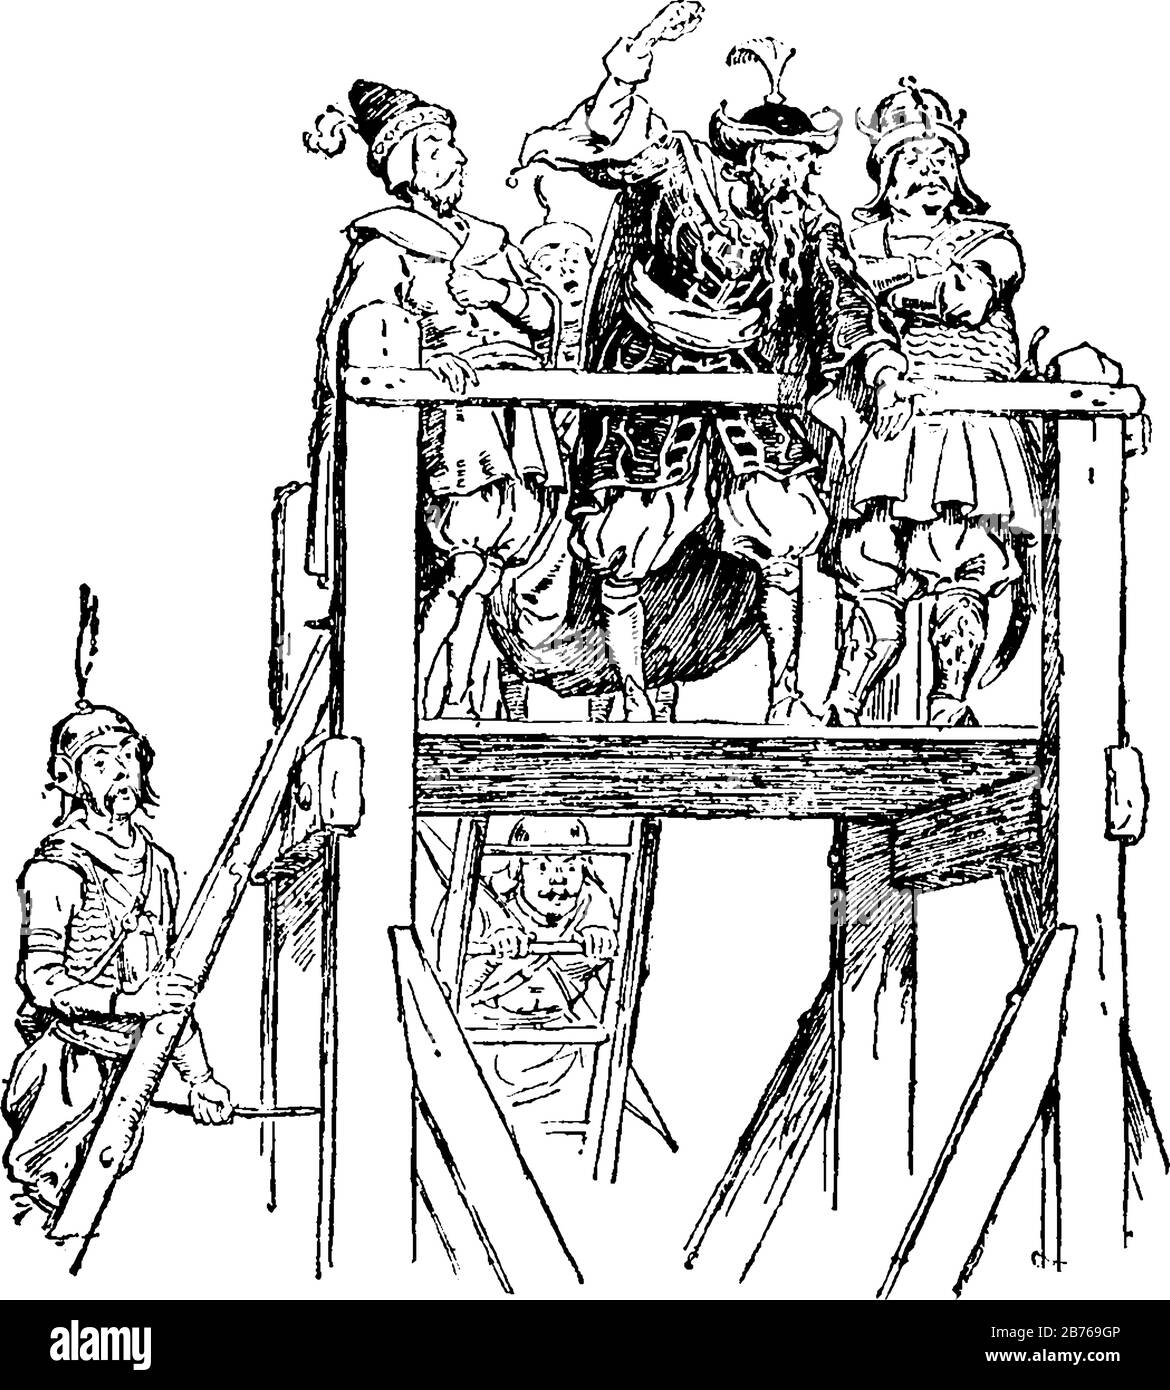 Quatre hommes debout sur scène et un homme donnant la parole, deux hommes tenant l'échelle, dessin vintage de ligne ou illustration de gravure Illustration de Vecteur